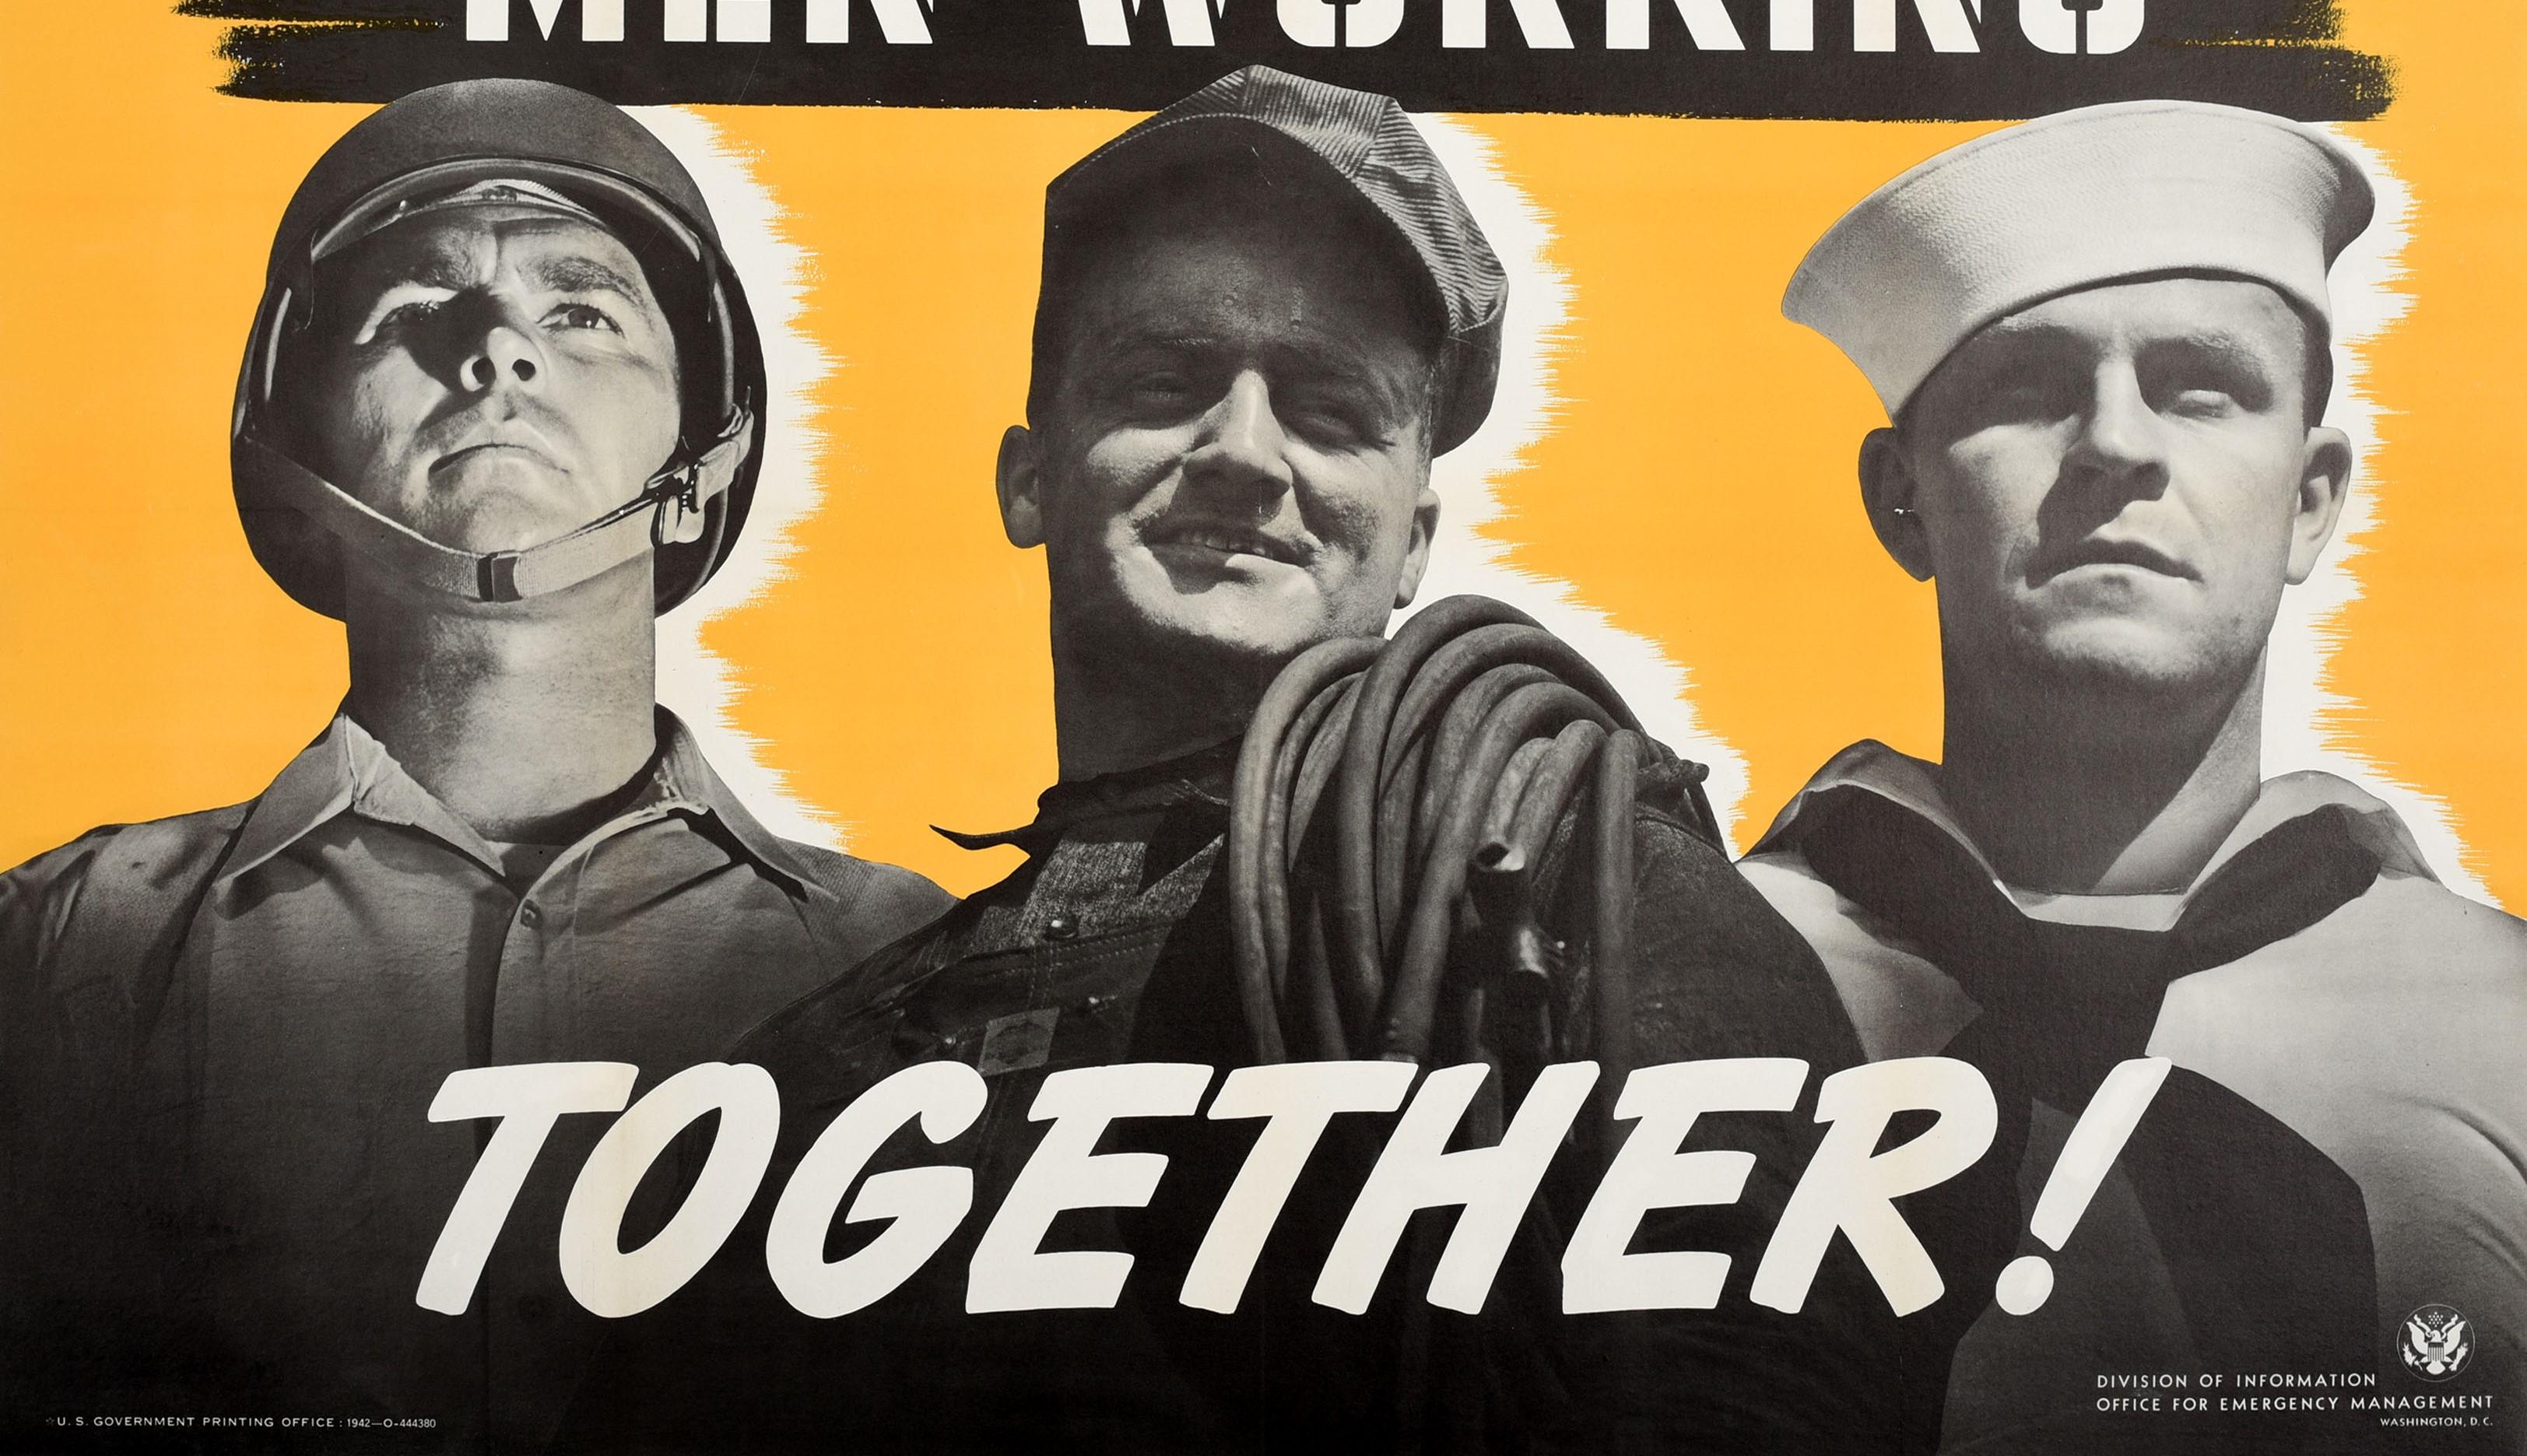 Originalplakat aus dem Zweiten Weltkrieg - Men Working Together! - mit einem Soldaten der US-Army und einem Matrosen der Navy in Militäruniform, die hinter einem lächelnden Fabrikarbeiter mit Gummirohren über der Schulter vor einem gelb schattierten